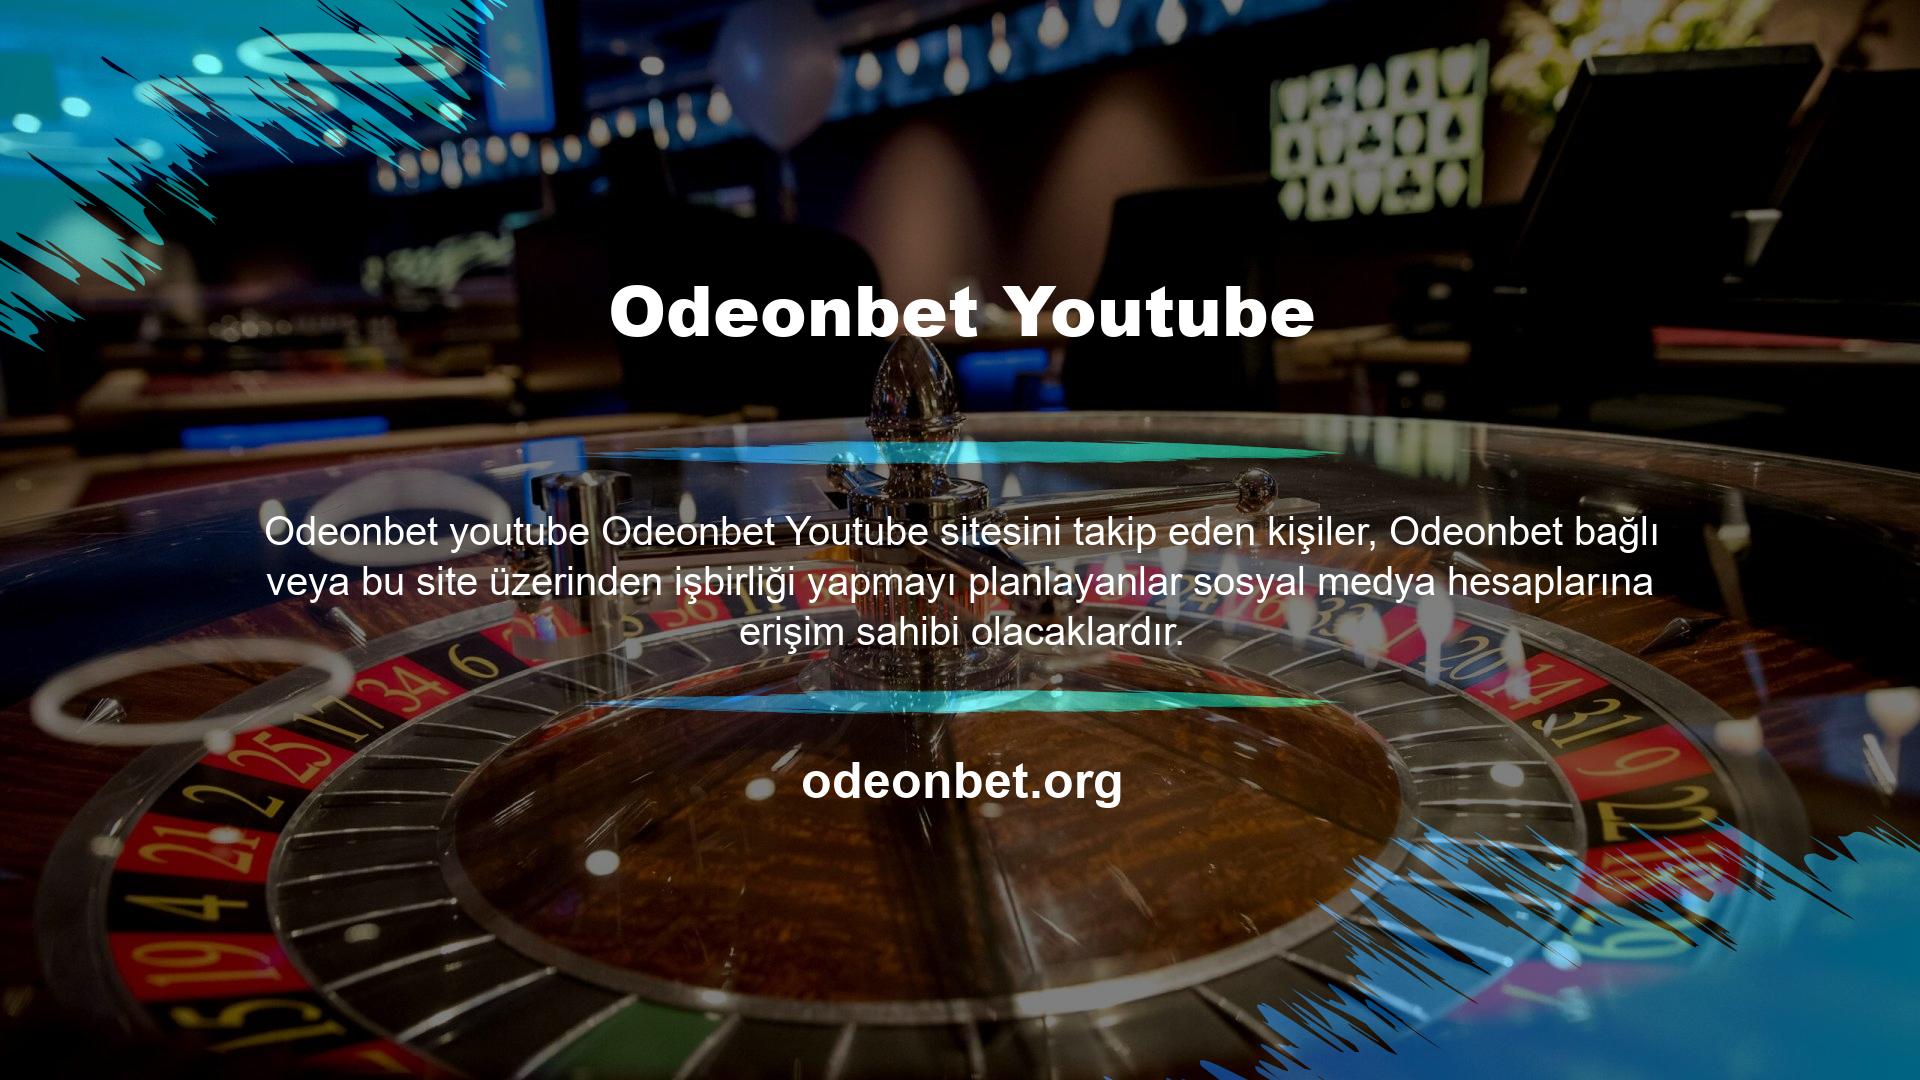 Kullanabileceğiniz alanlar arasında Odeonbet Youtube popüler anlayışla birleştiğinde en çok tercih edilenlerin başında gelmektedir